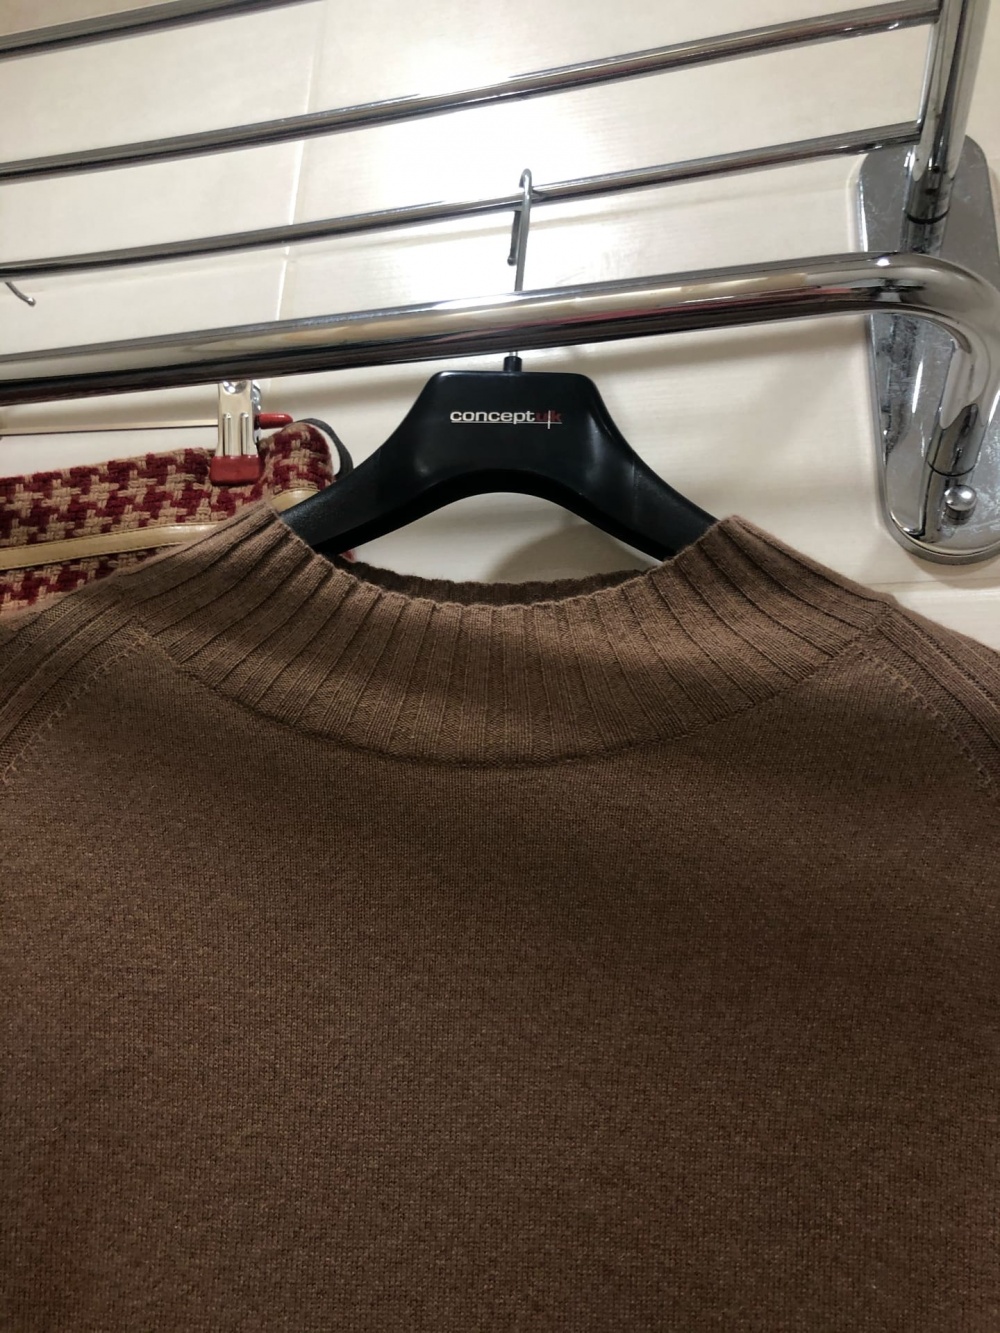 Кашемировый свитер WHITE. Размер М-L.